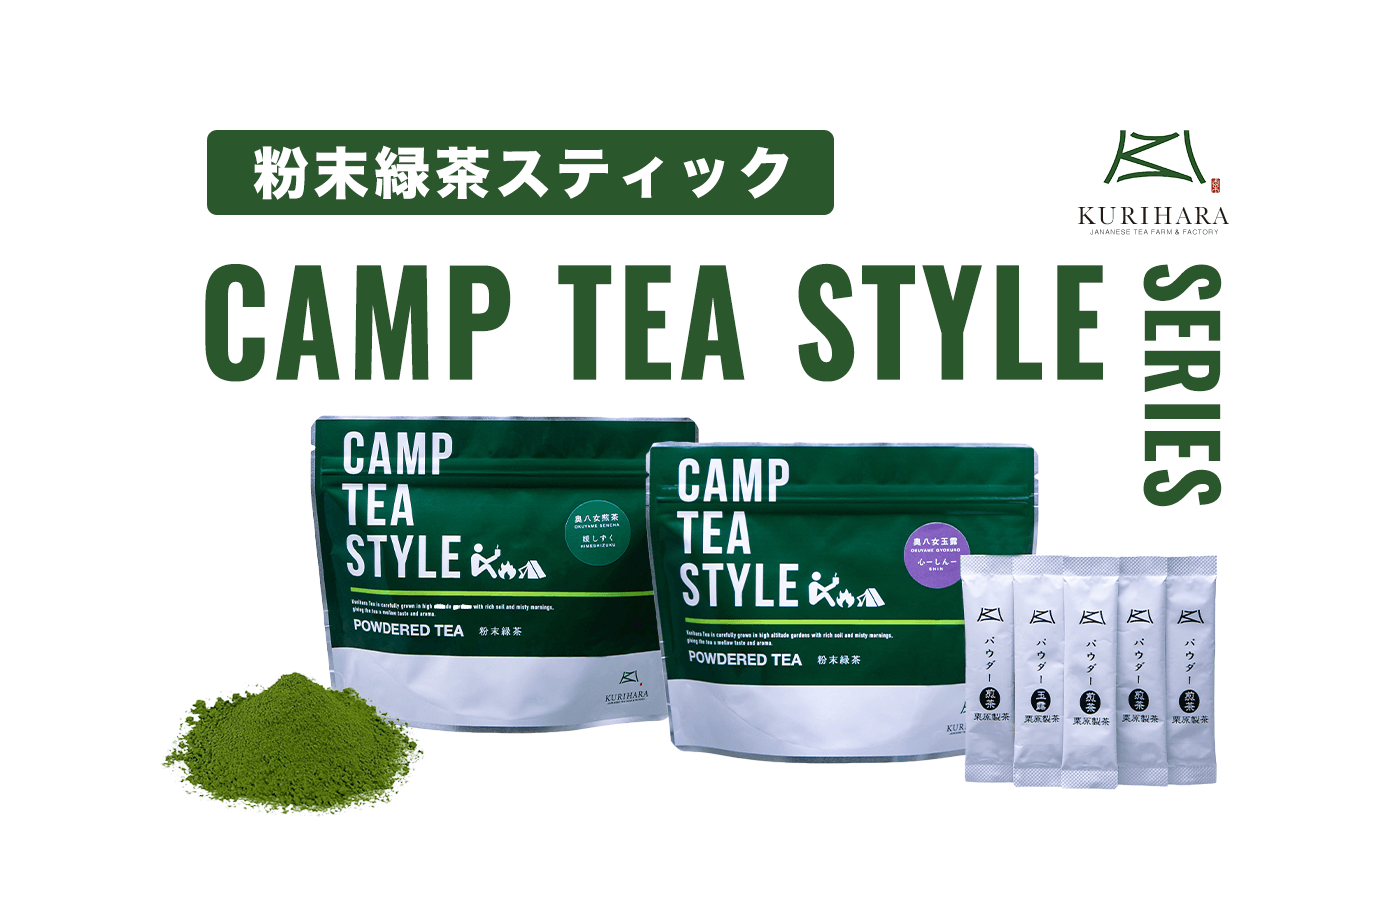 粉末緑茶スティック CAMP TEA STYLE SERIES